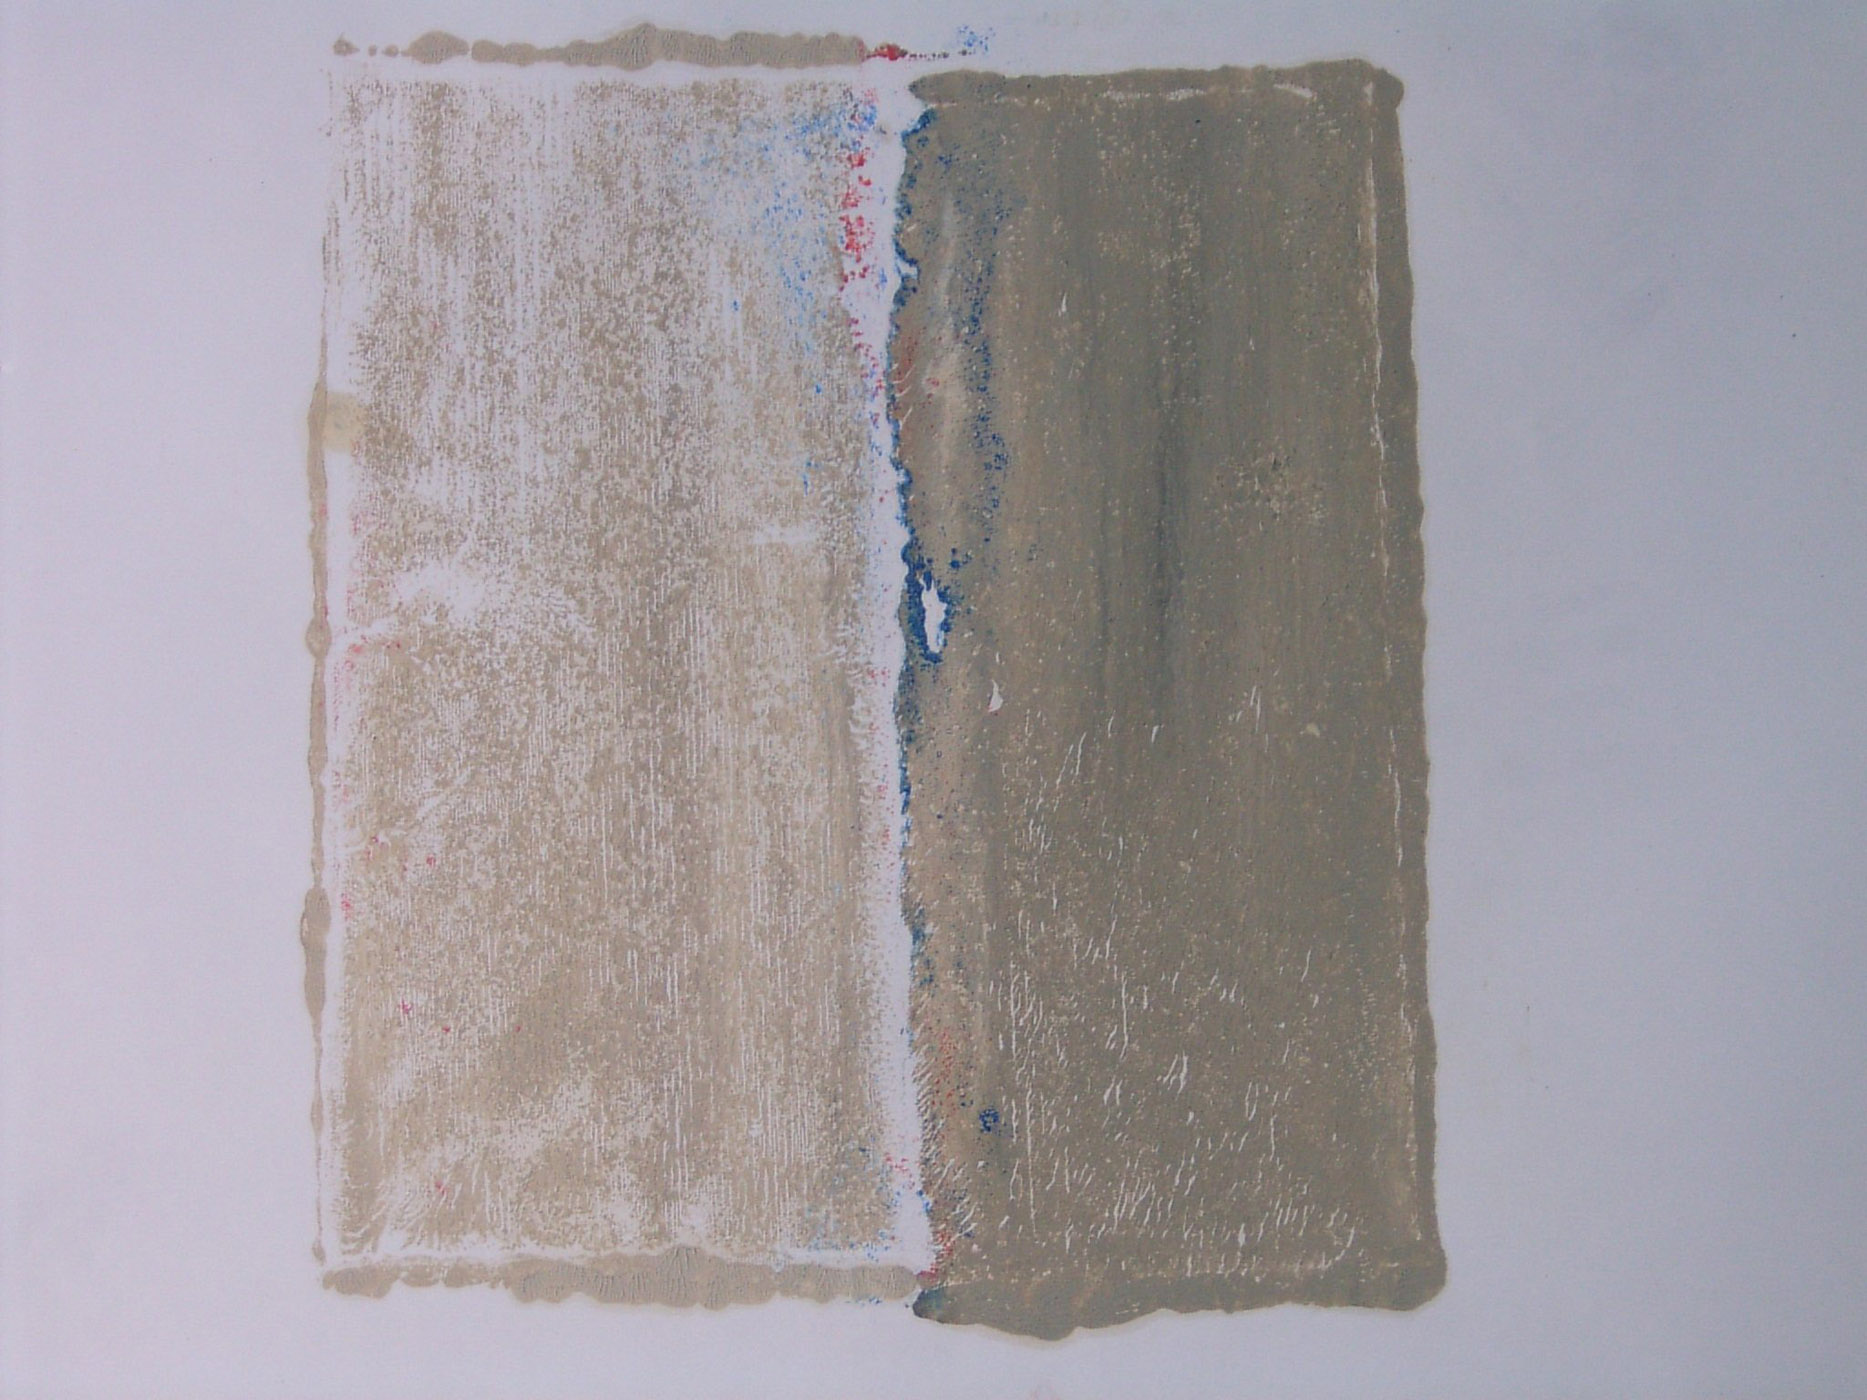 MARC FELD 2004 PATIENCE 2 Huile et pigment sur papier  44 x 64 cm